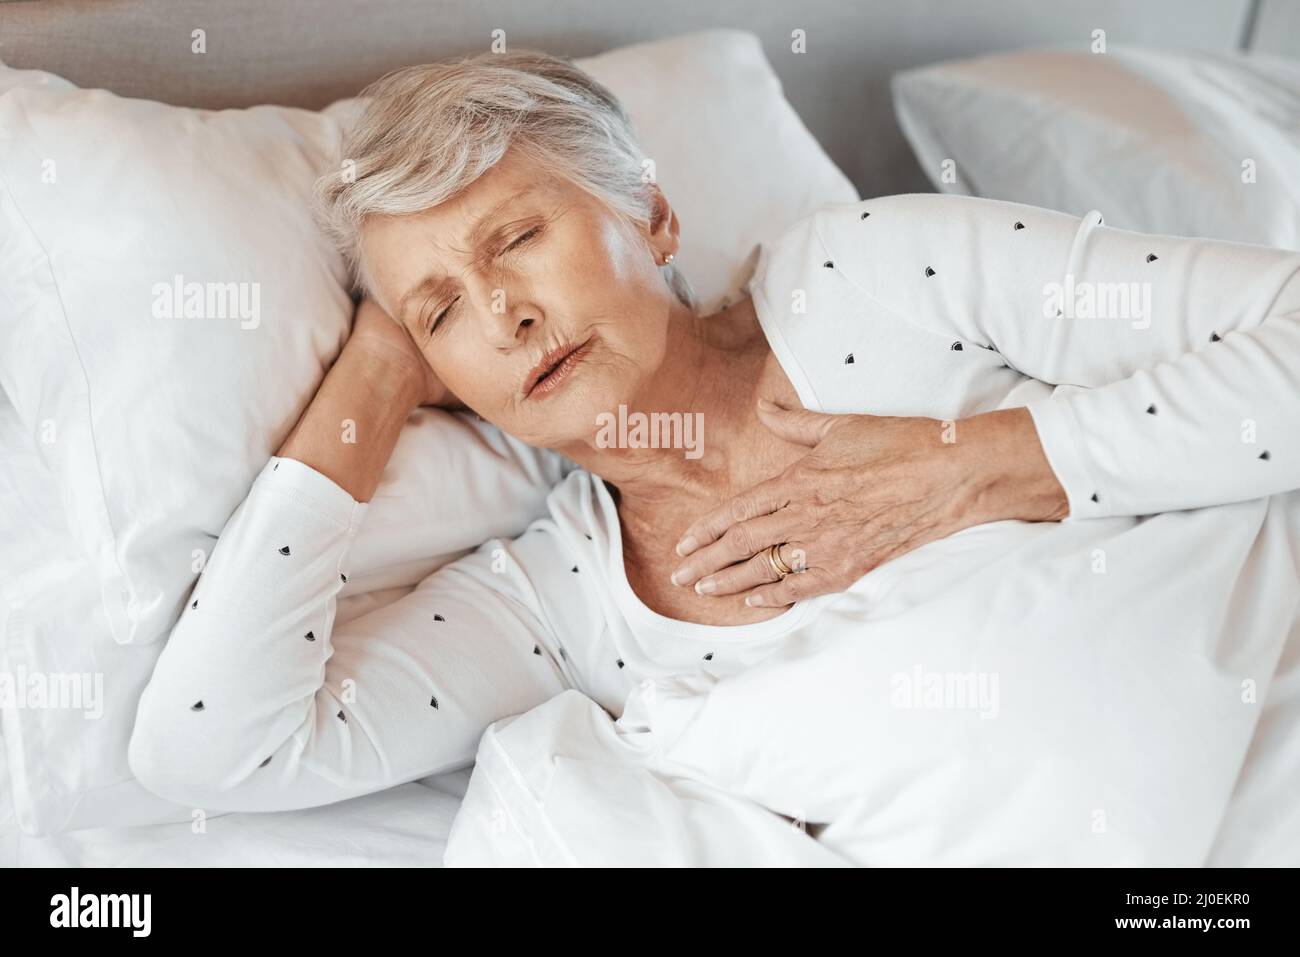 Es kann jedem passieren. Aufnahme einer älteren Frau mit Brustschmerzen im Bett in einem Pflegeheim. Stockfoto